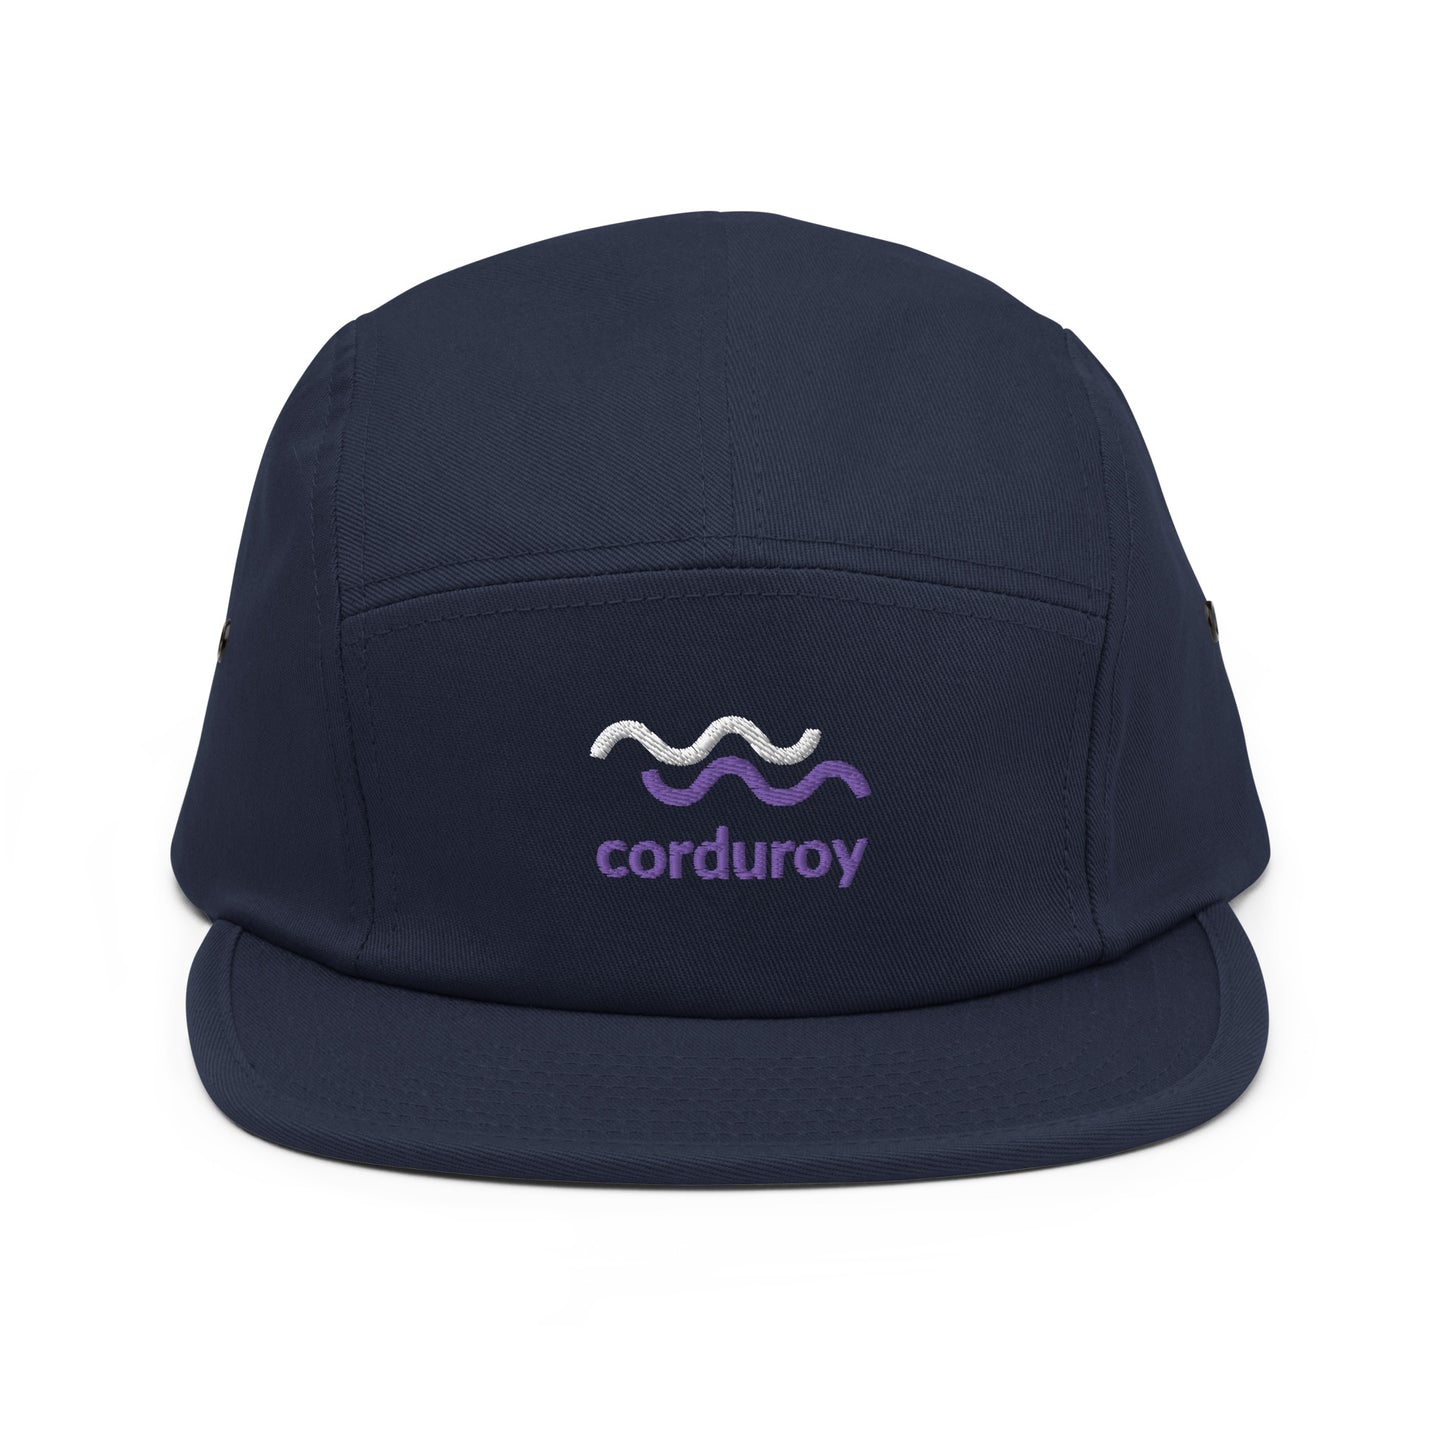 The Corduroy Cap